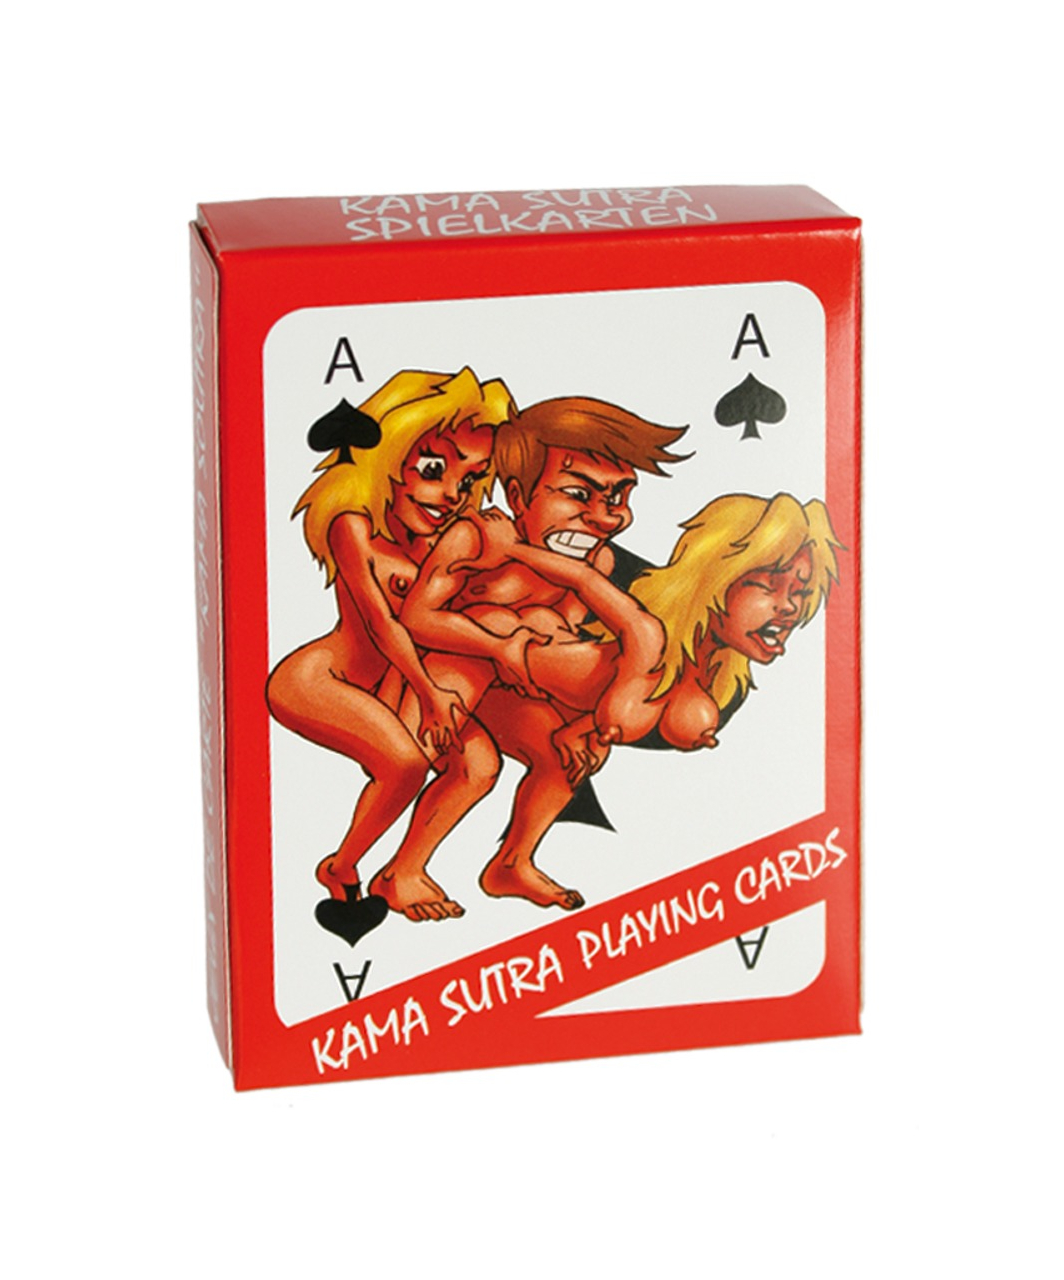 OV игральные карты с секс-карикатурами